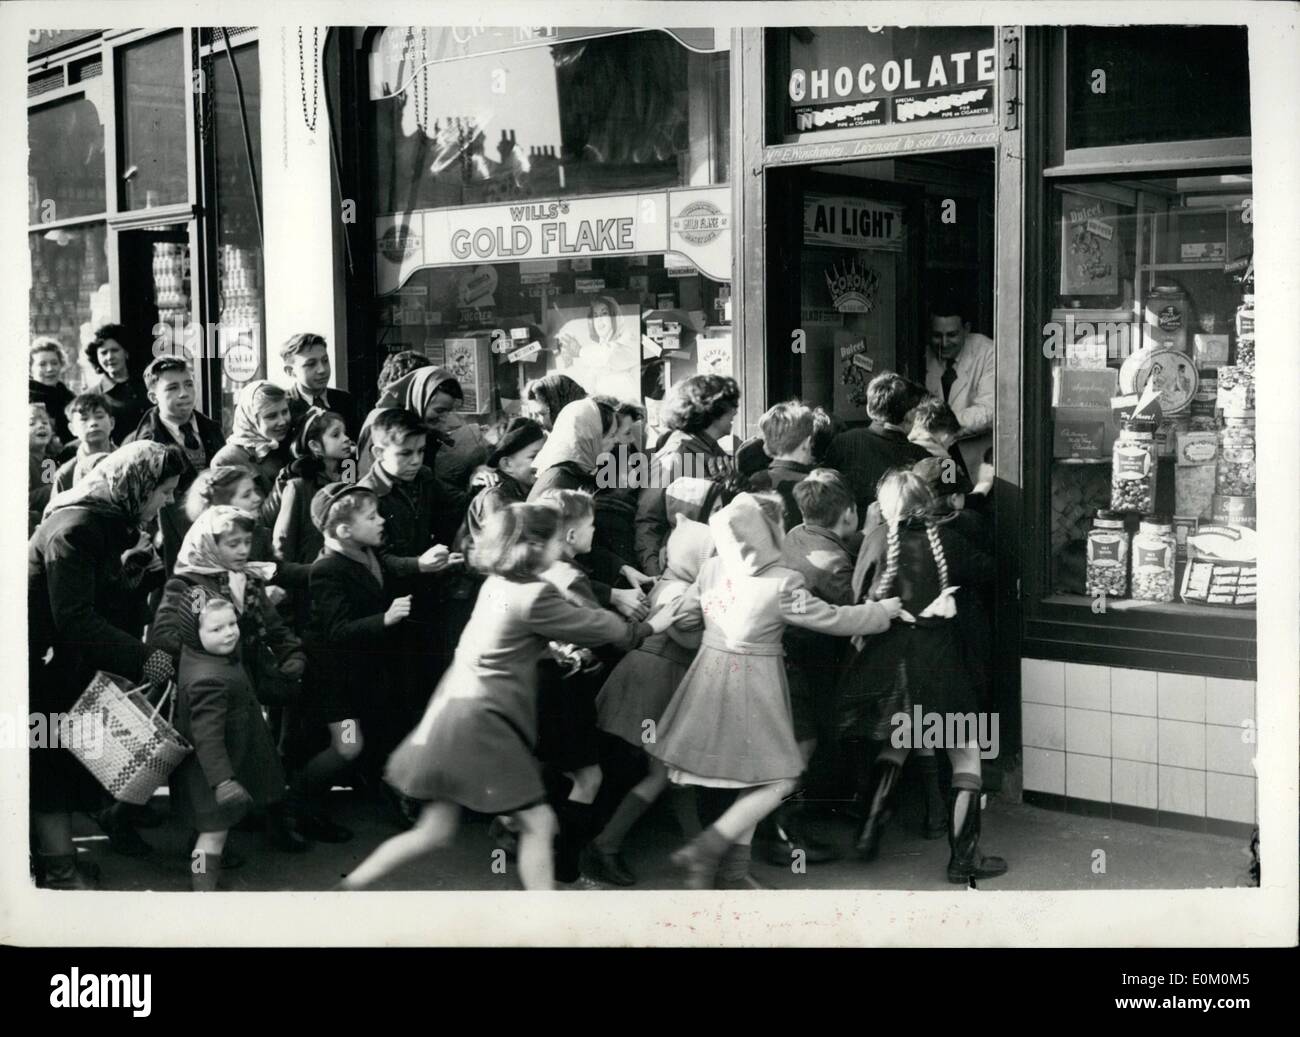 2. Februar 1953 - die Ration ist ausgeschaltet - des Ansturms auf! Kinder RAID-Konditoreien; Mit der Anhebung der Rationierung und Einschränkungen auf Süßigkeiten - viele Geschäfte erlebt einen Ansturm auf ihre Bestände heute Morgen. Foto zeigt die Szene als Schulkinder Strich in den Laden in Shrewsbury Road, North Aktion – ihr erstes off Ration Süßigkeiten heute Morgen erhalten. Stockfoto